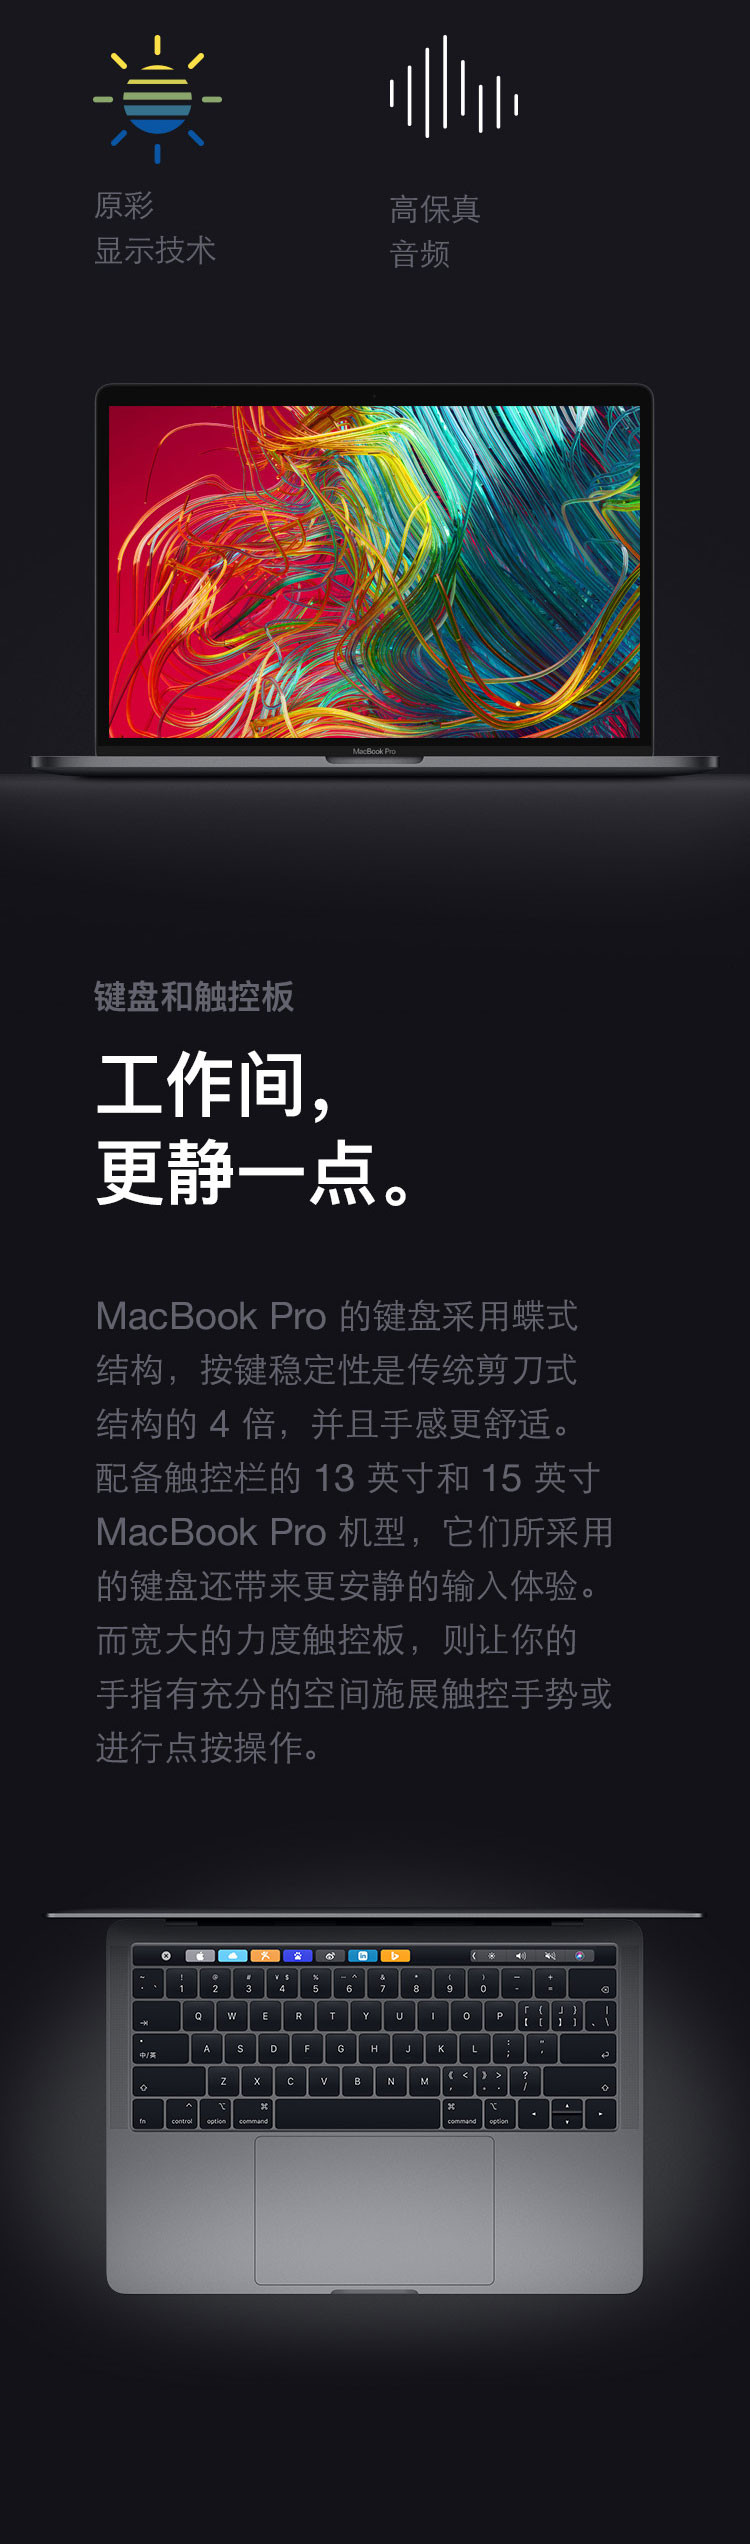 苹果/APPLE 2019款 Macbook Pro 15.4寸 笔记本电脑 MV912 MV932